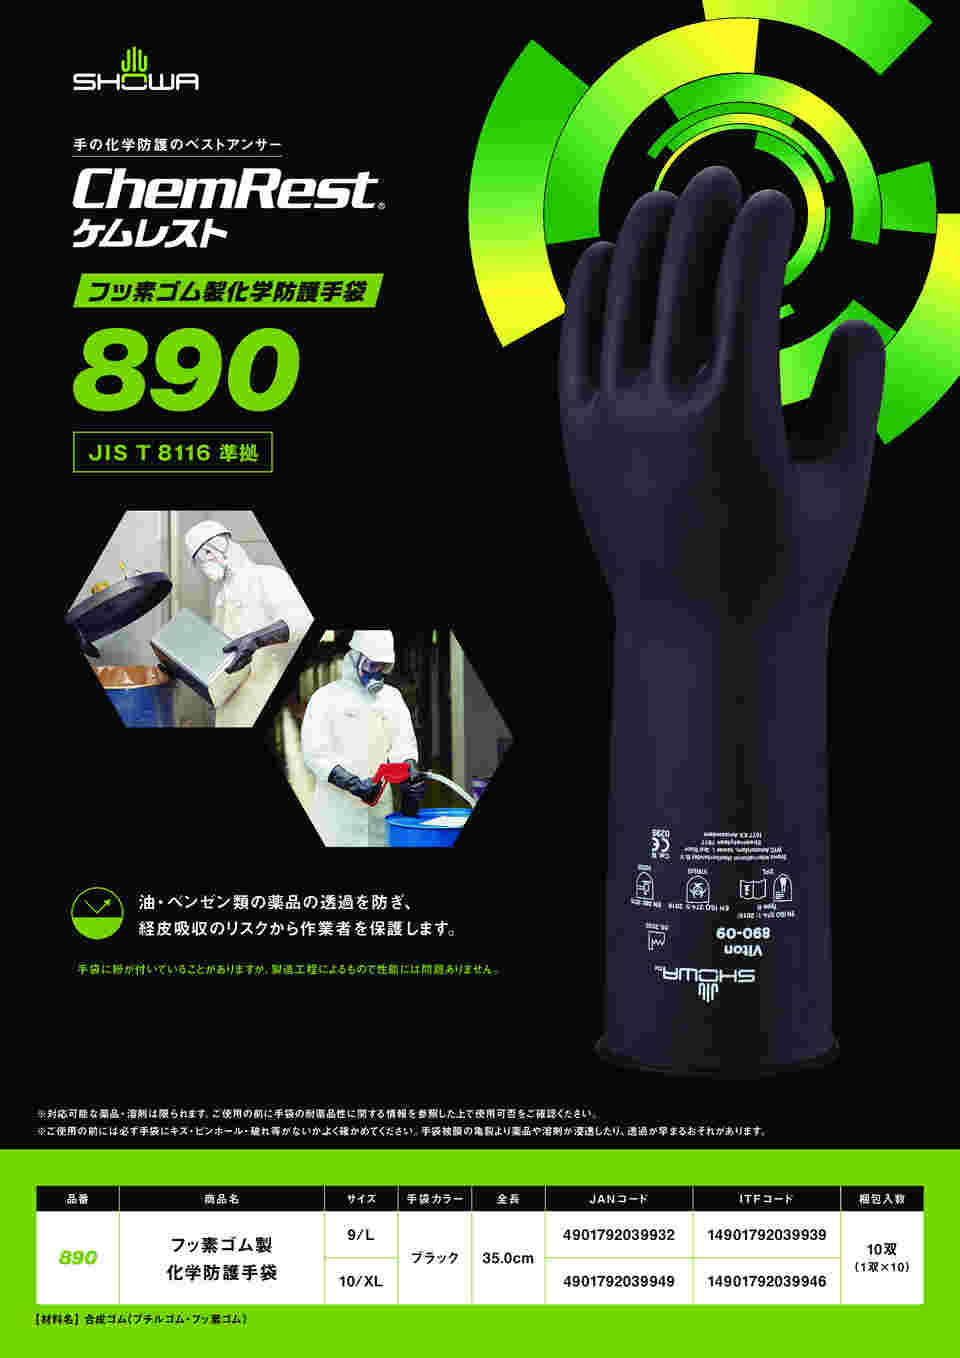 65-3750-69 フッ素ゴム製化学防護手袋 ブラック L 890-L 【AXEL】 アズワン